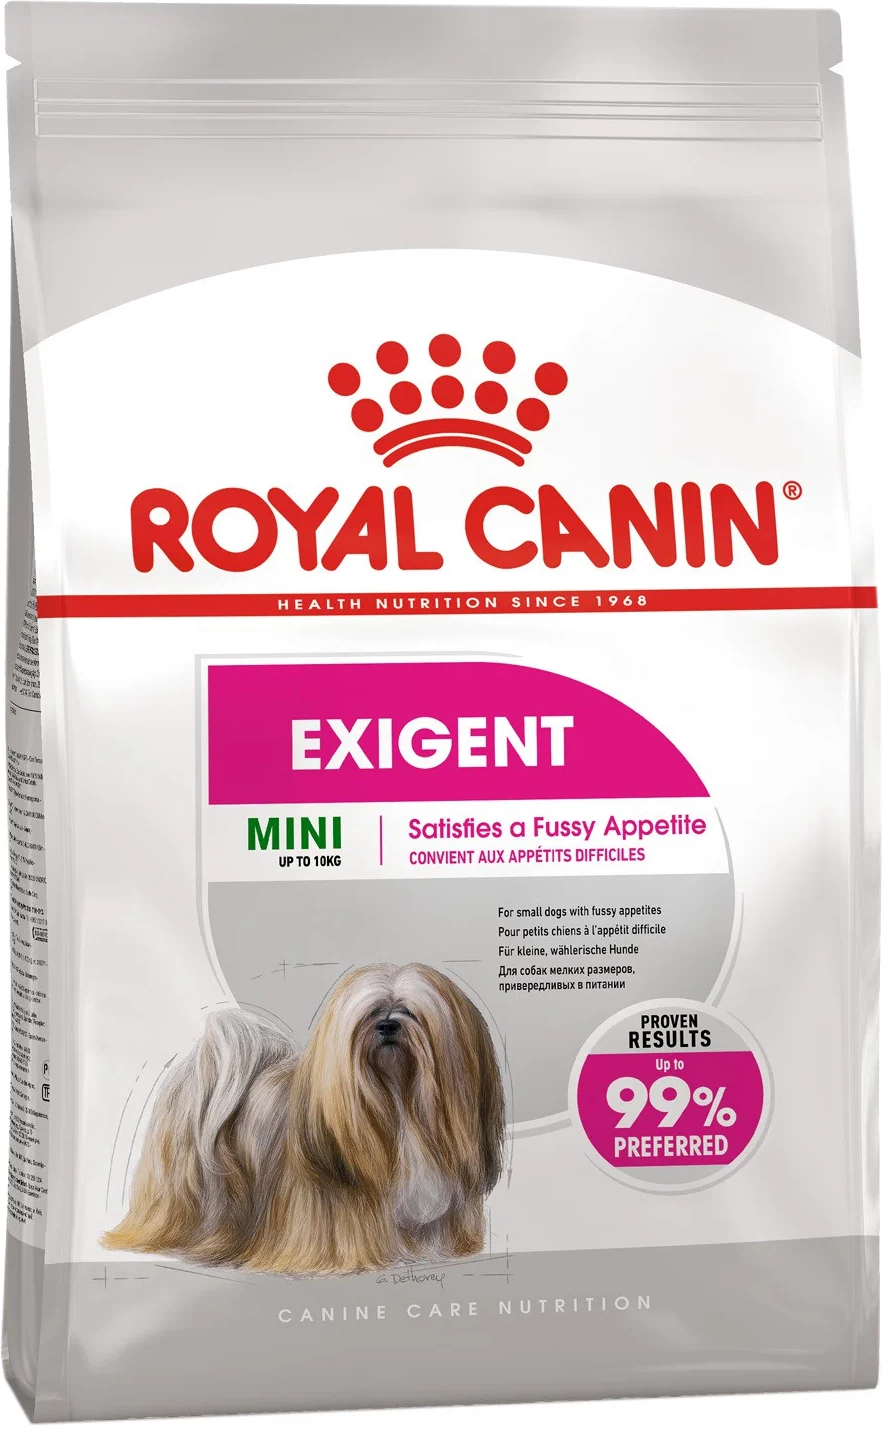 Сухой корм Royal Canin для взрослых собак мелких размеров (весом от 1 до 10 кг), привередливых в питании, 1 кг.